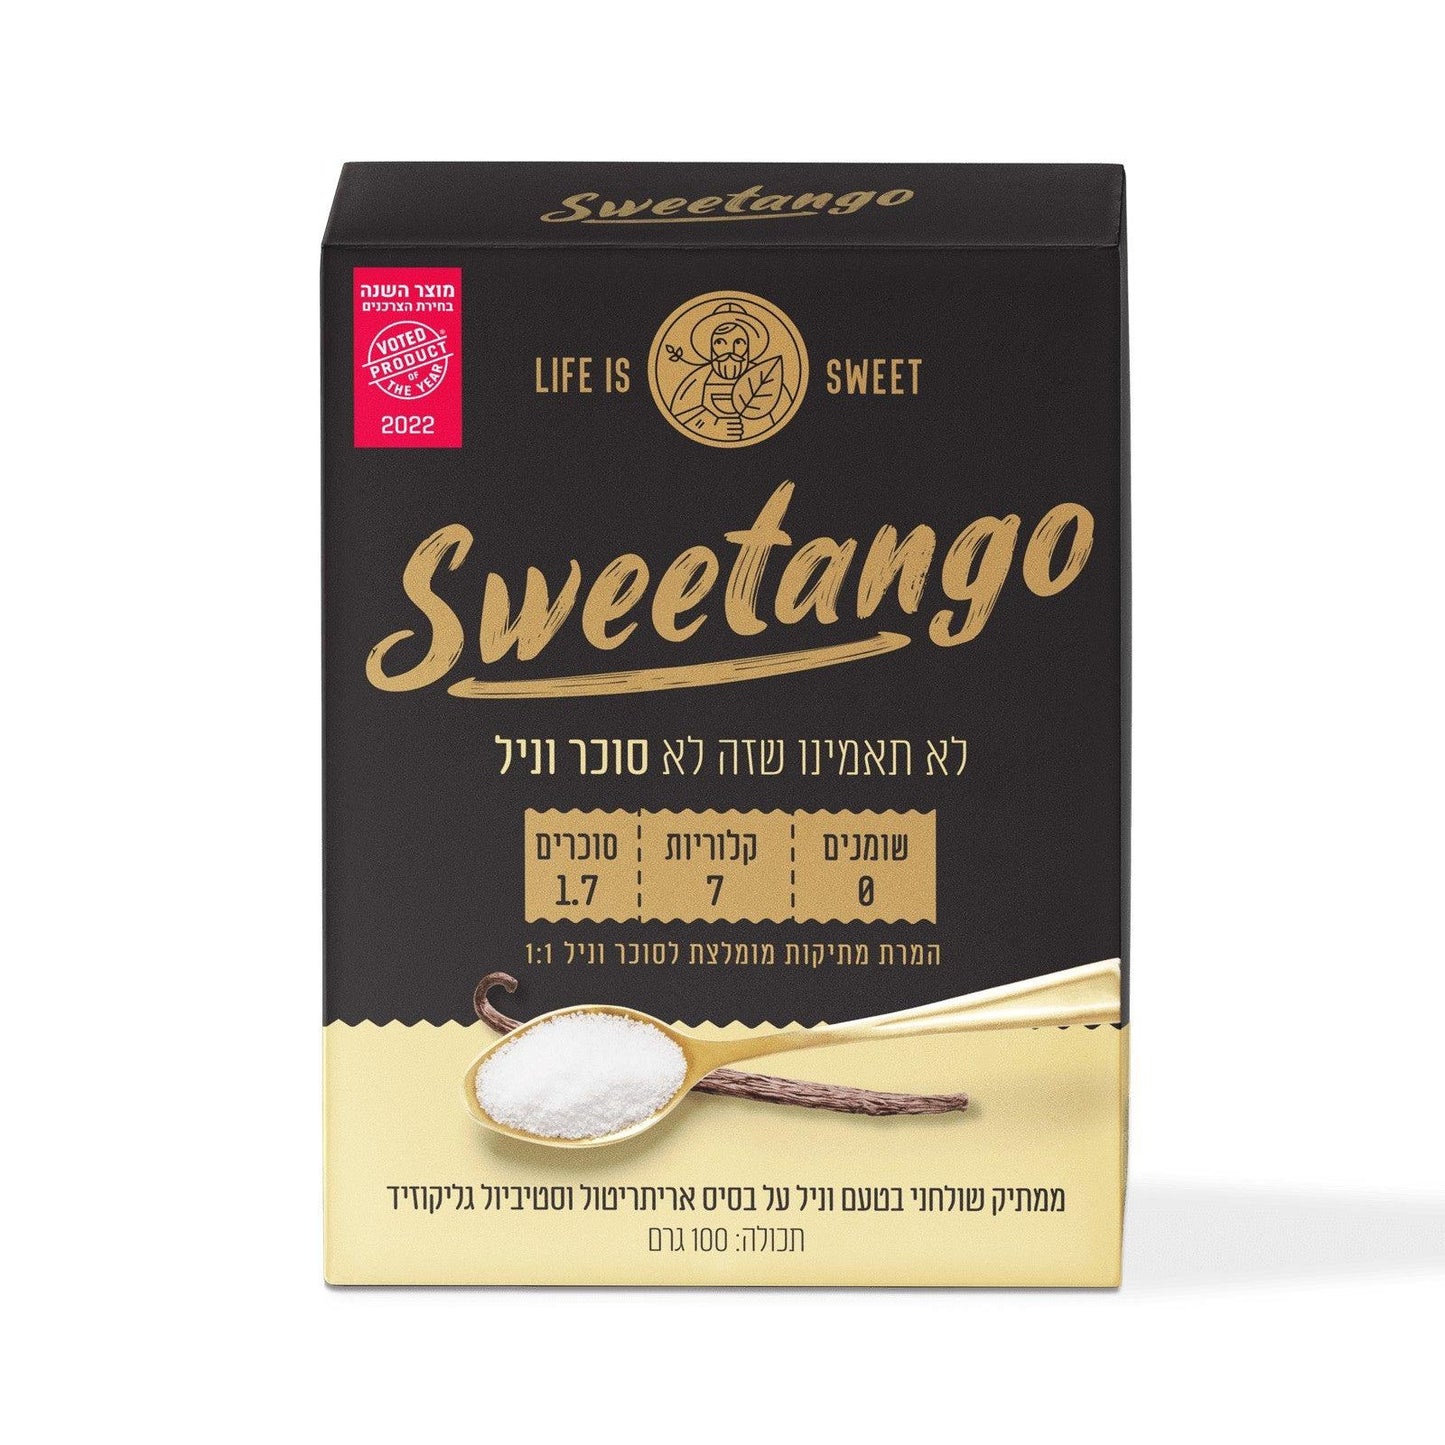 תחליף סוכר וניל | סוויטאנגו - Sweetango - פריקפוא